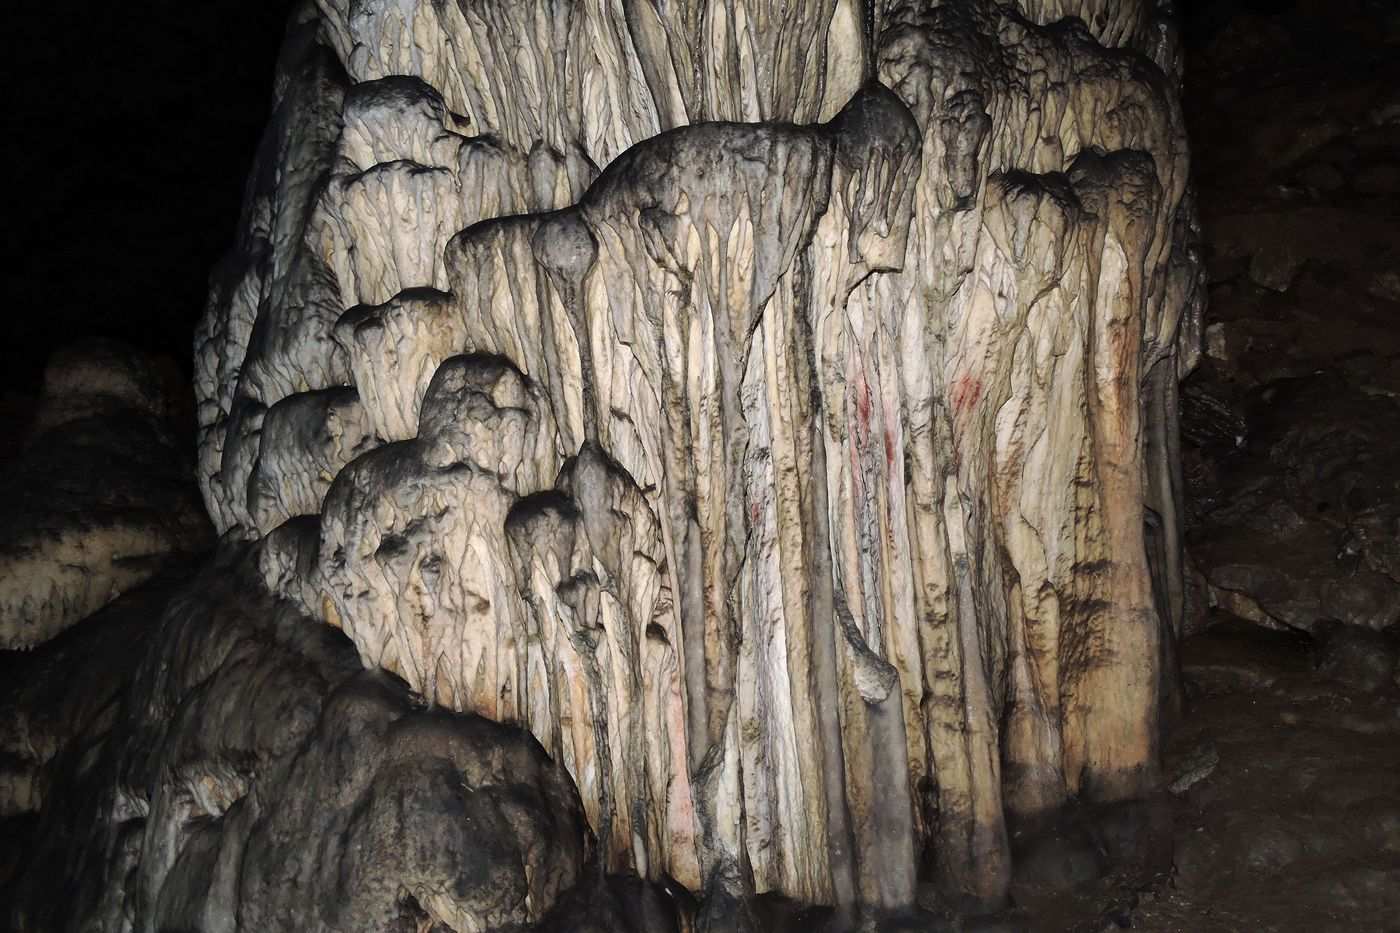 ค้นพบภาพวาดถ้ำยุคนีแอนเดอร์ทัล